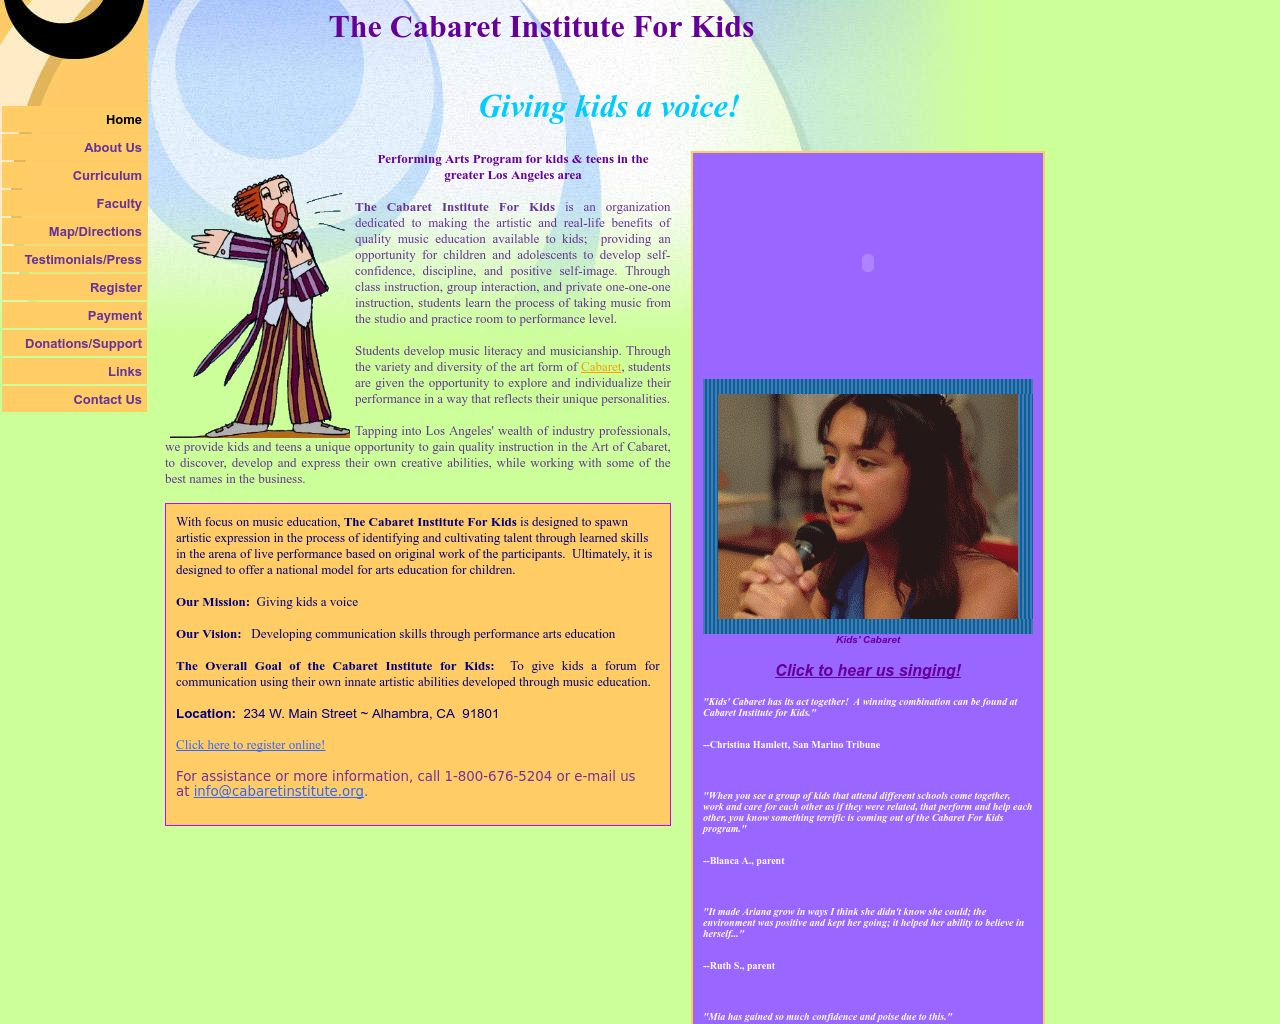 Image site cabaretinstitute.org in 1280x1024